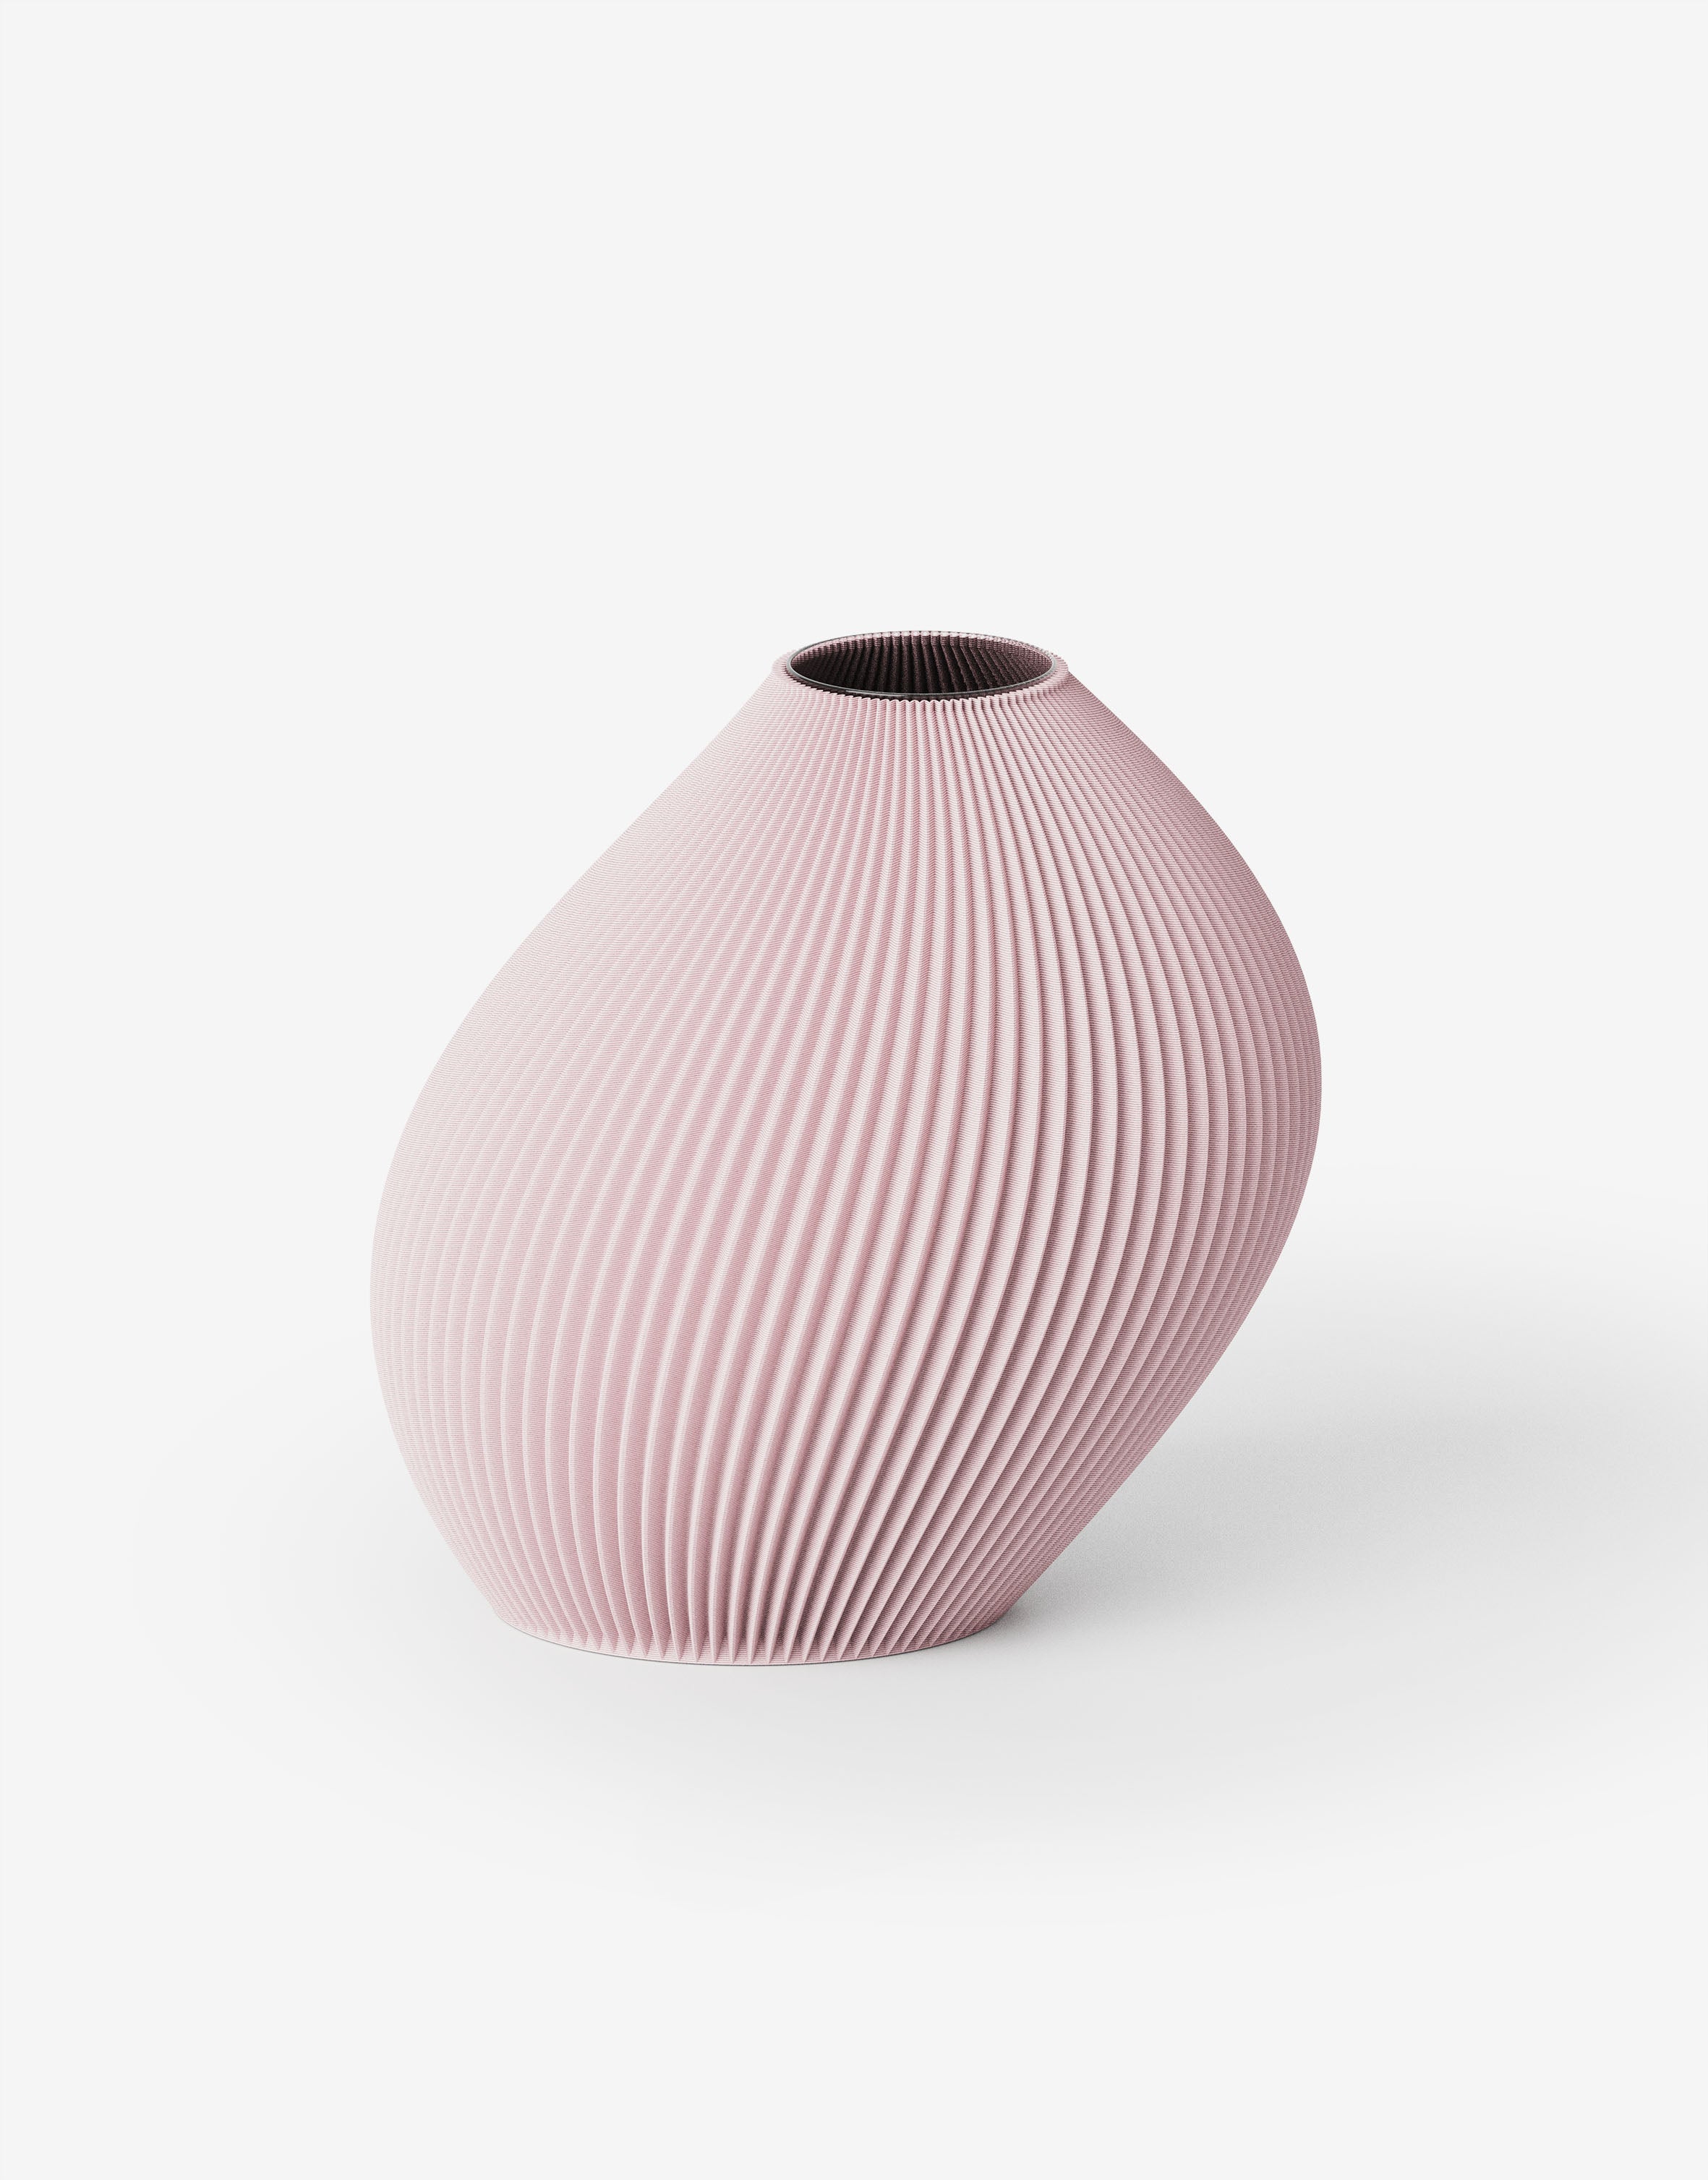 Bent - Vase